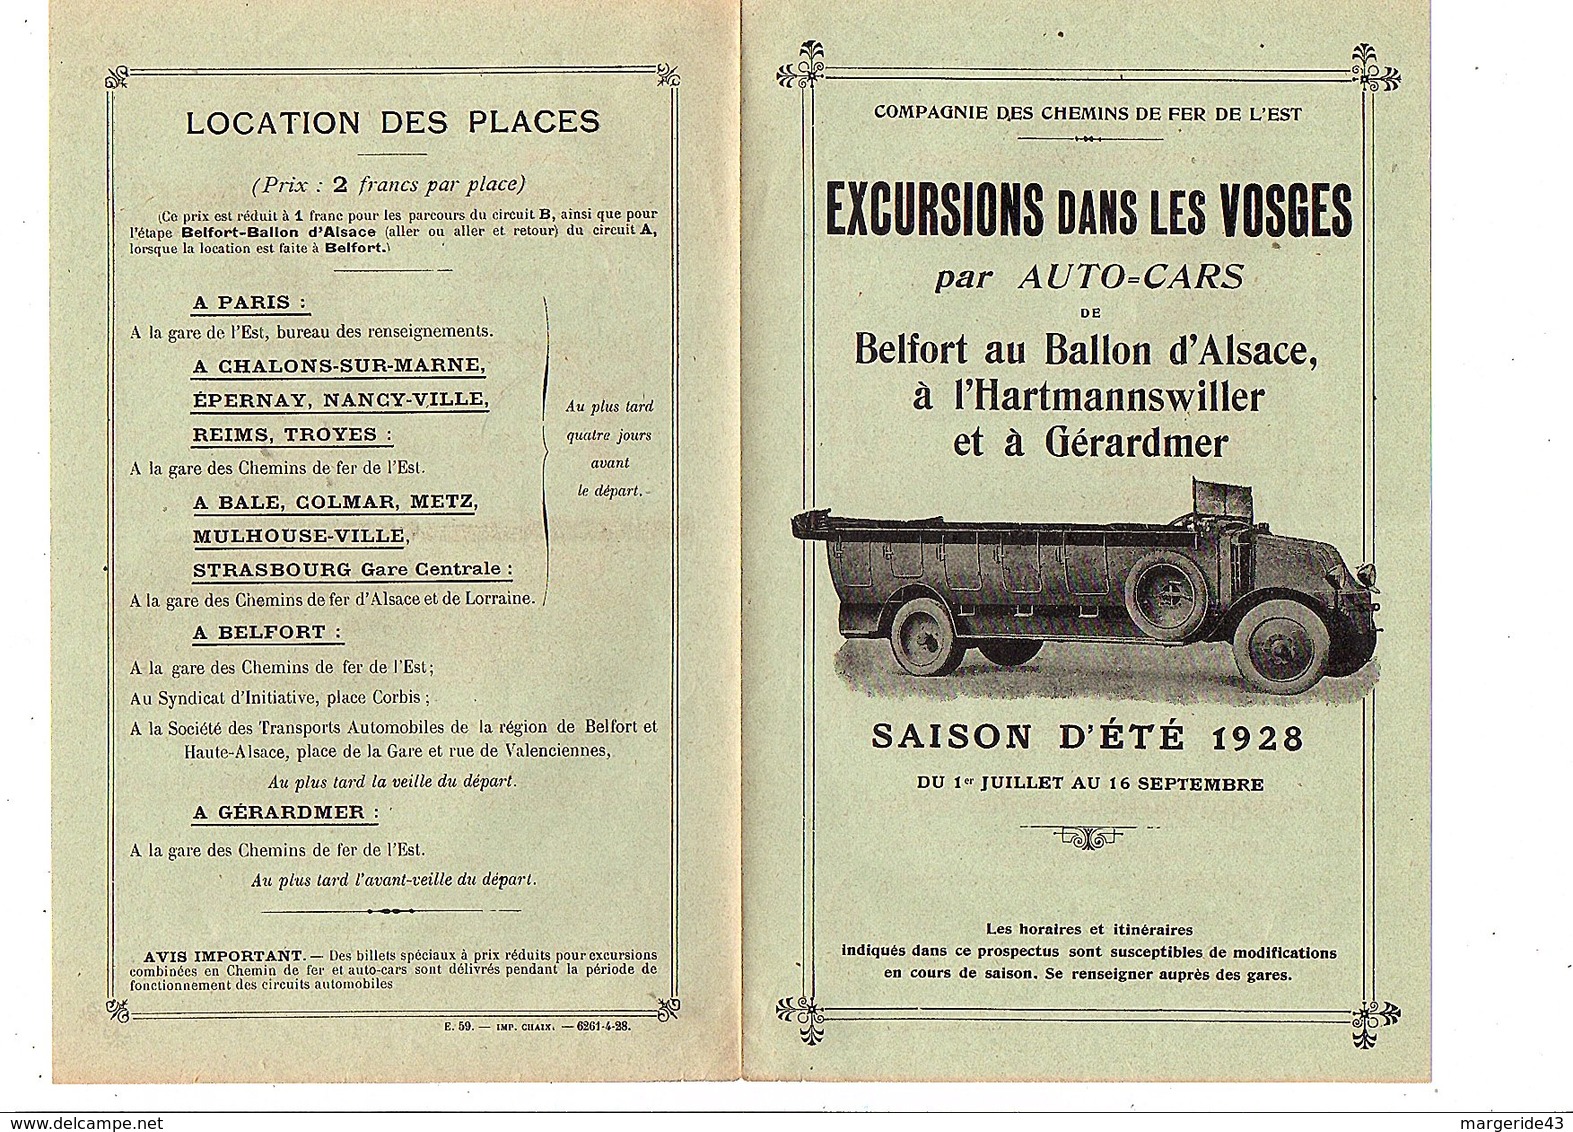 ETE 1928 ENCART PUBLICITAIRE EXCURSIONS DANS LES VOSGES EN AUTOCAR - Publicités